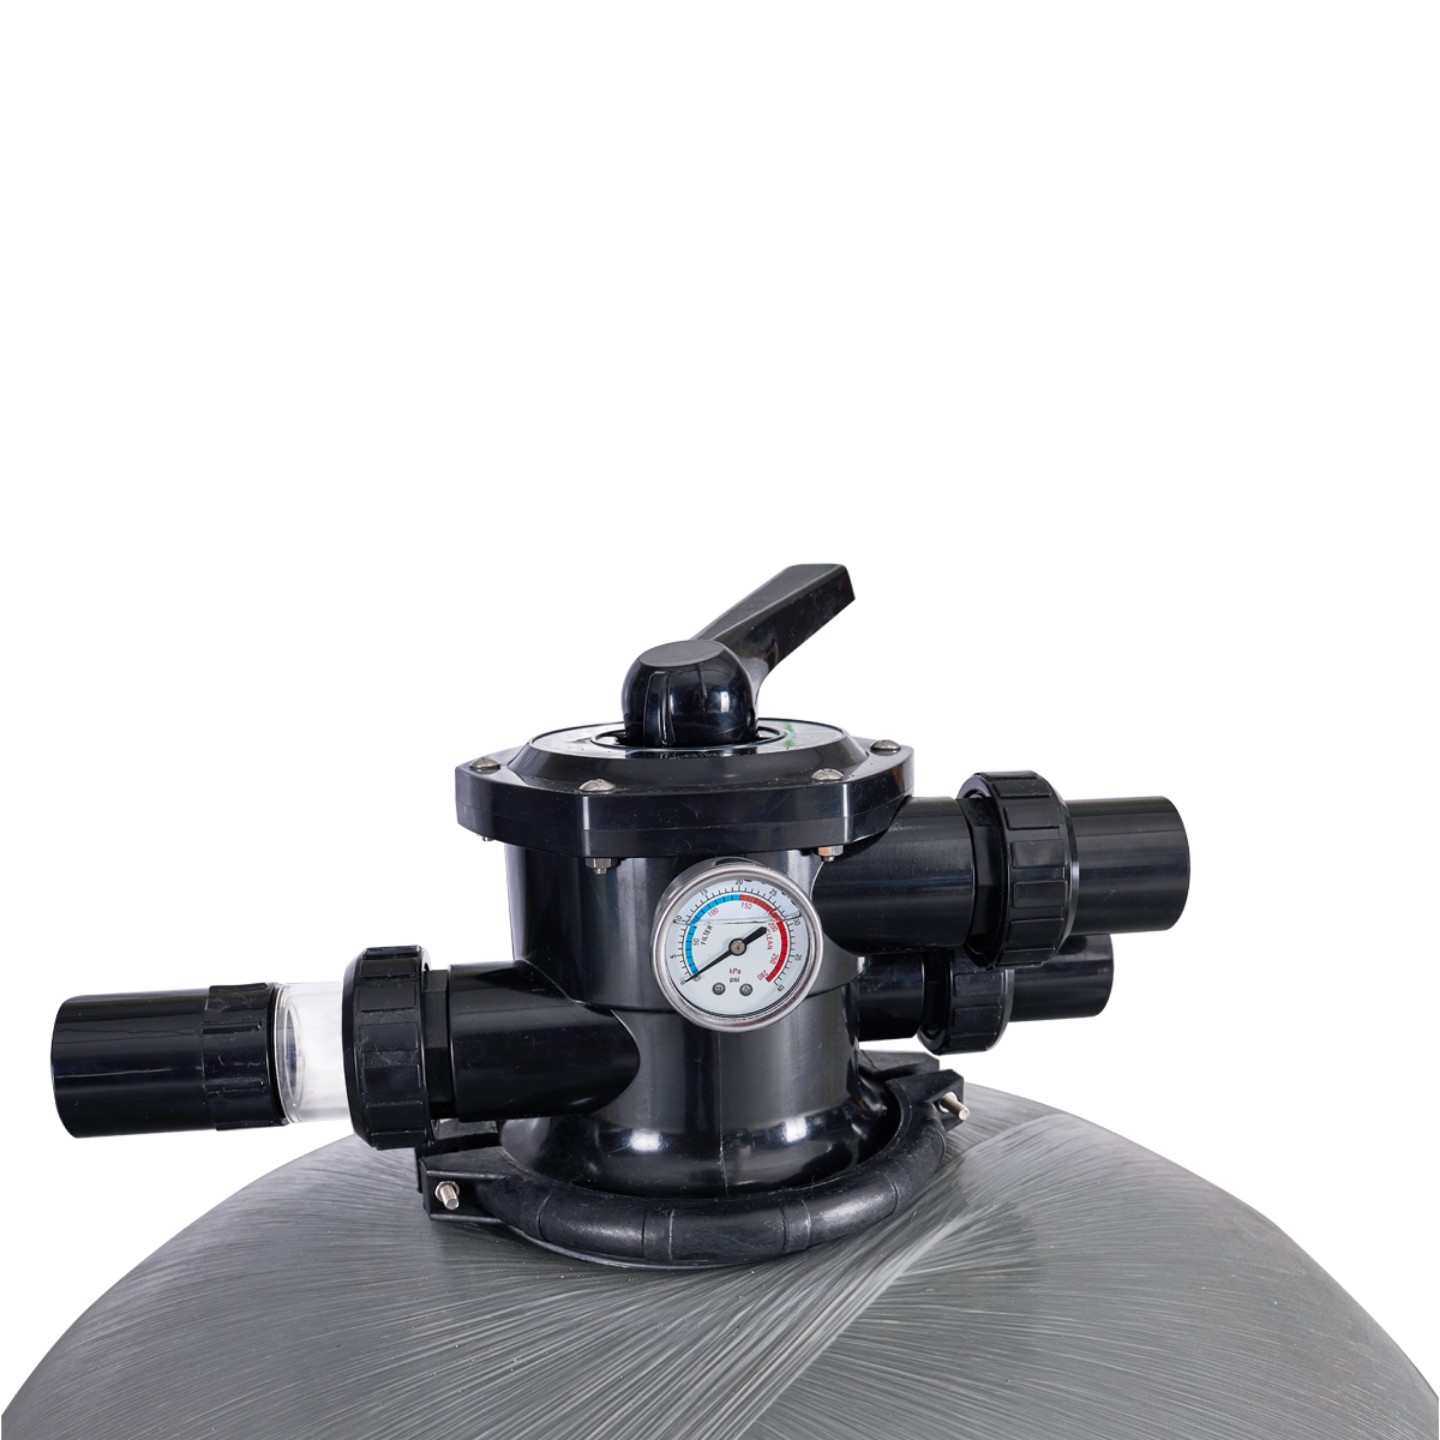 Фильтр AquaViva P28A (20m3/h, 700mm, 210kg,1.5" верх)